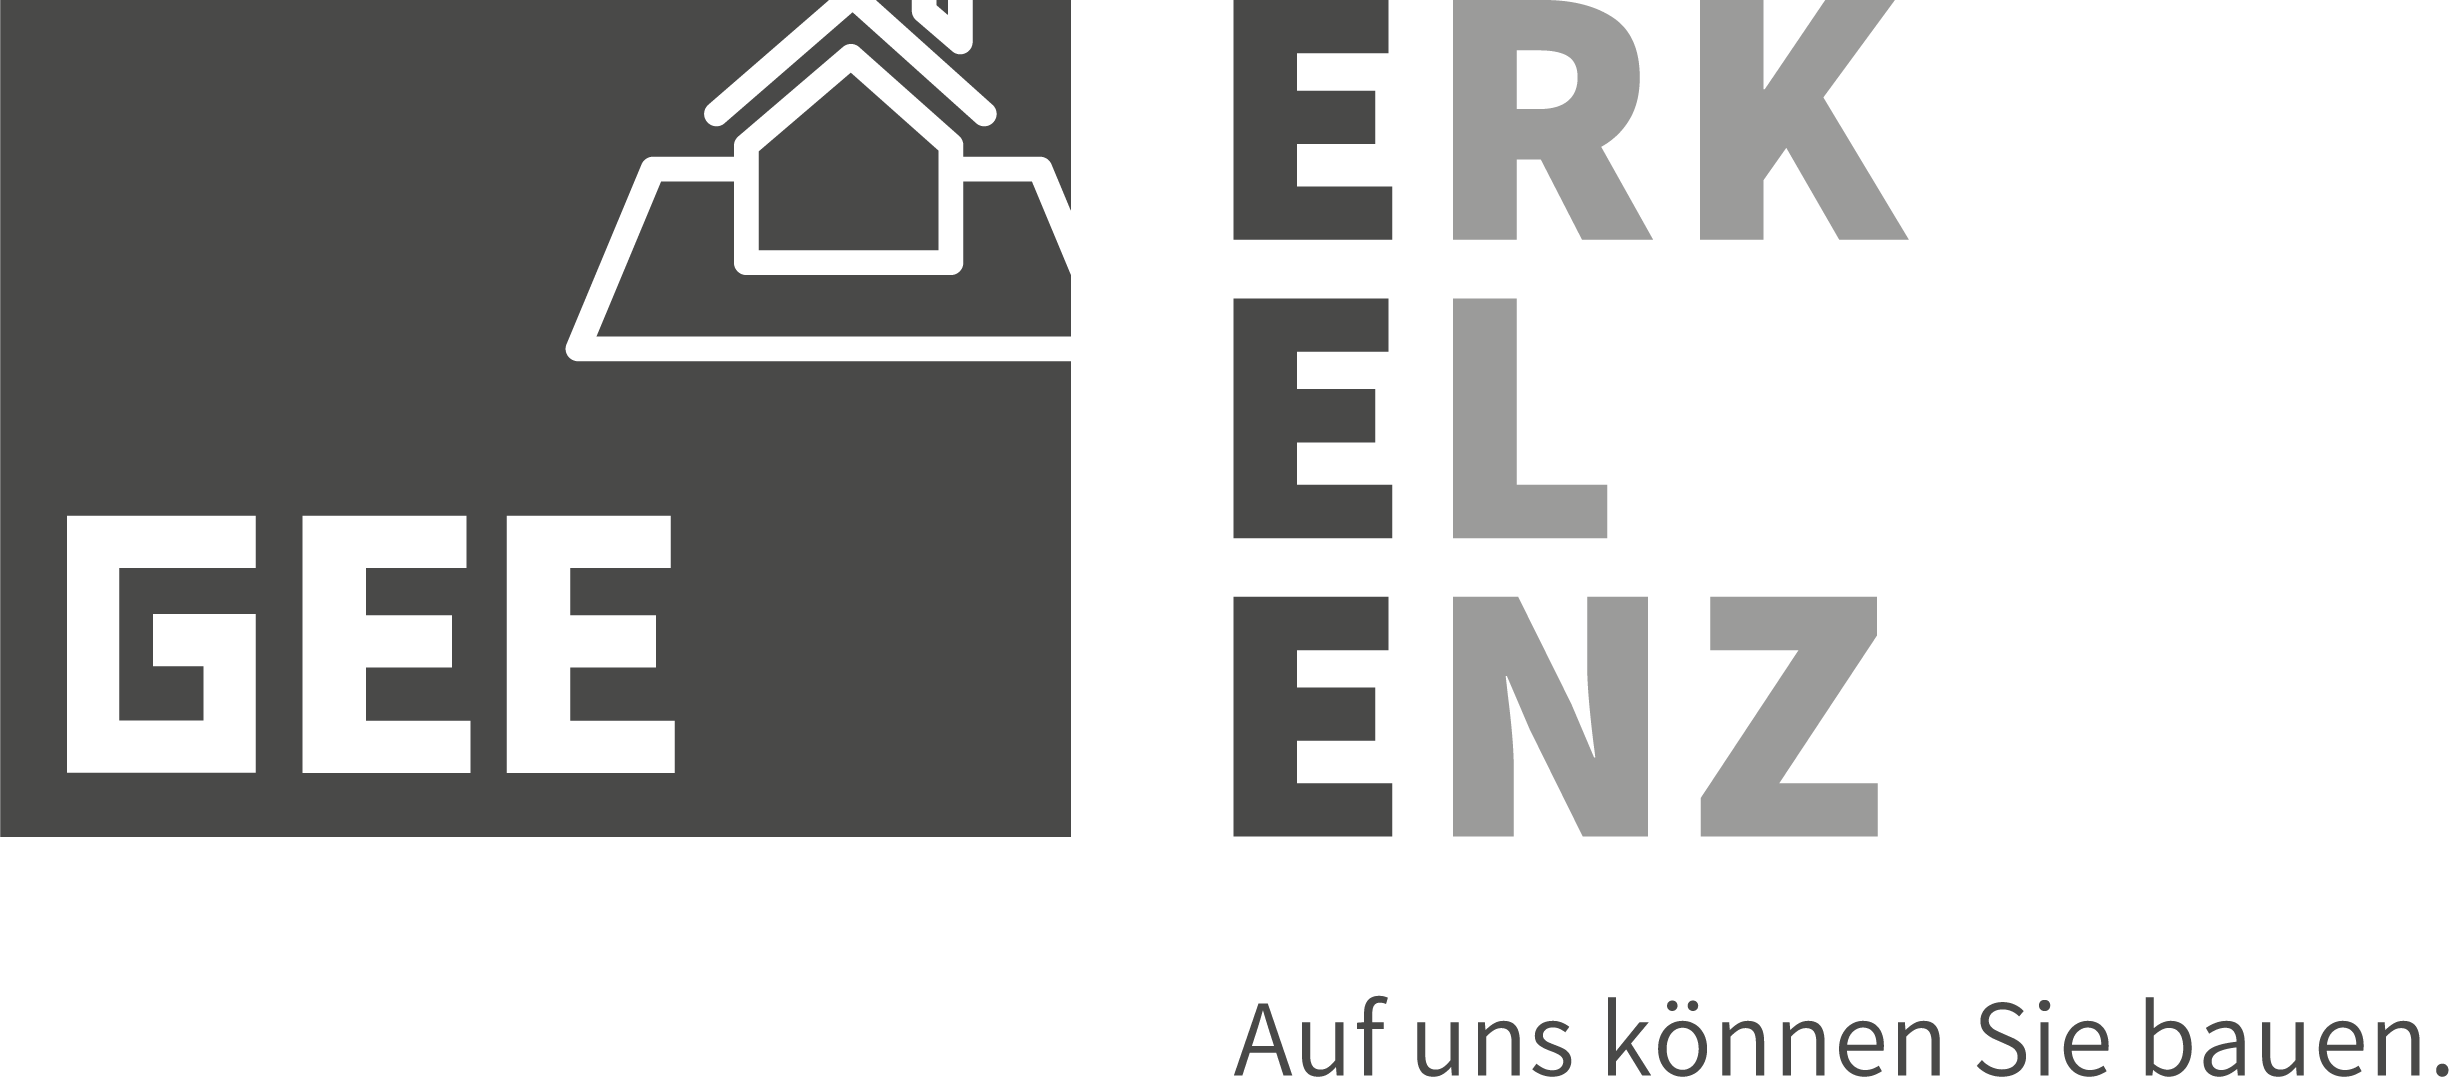 Logo: GEE Erkelenz